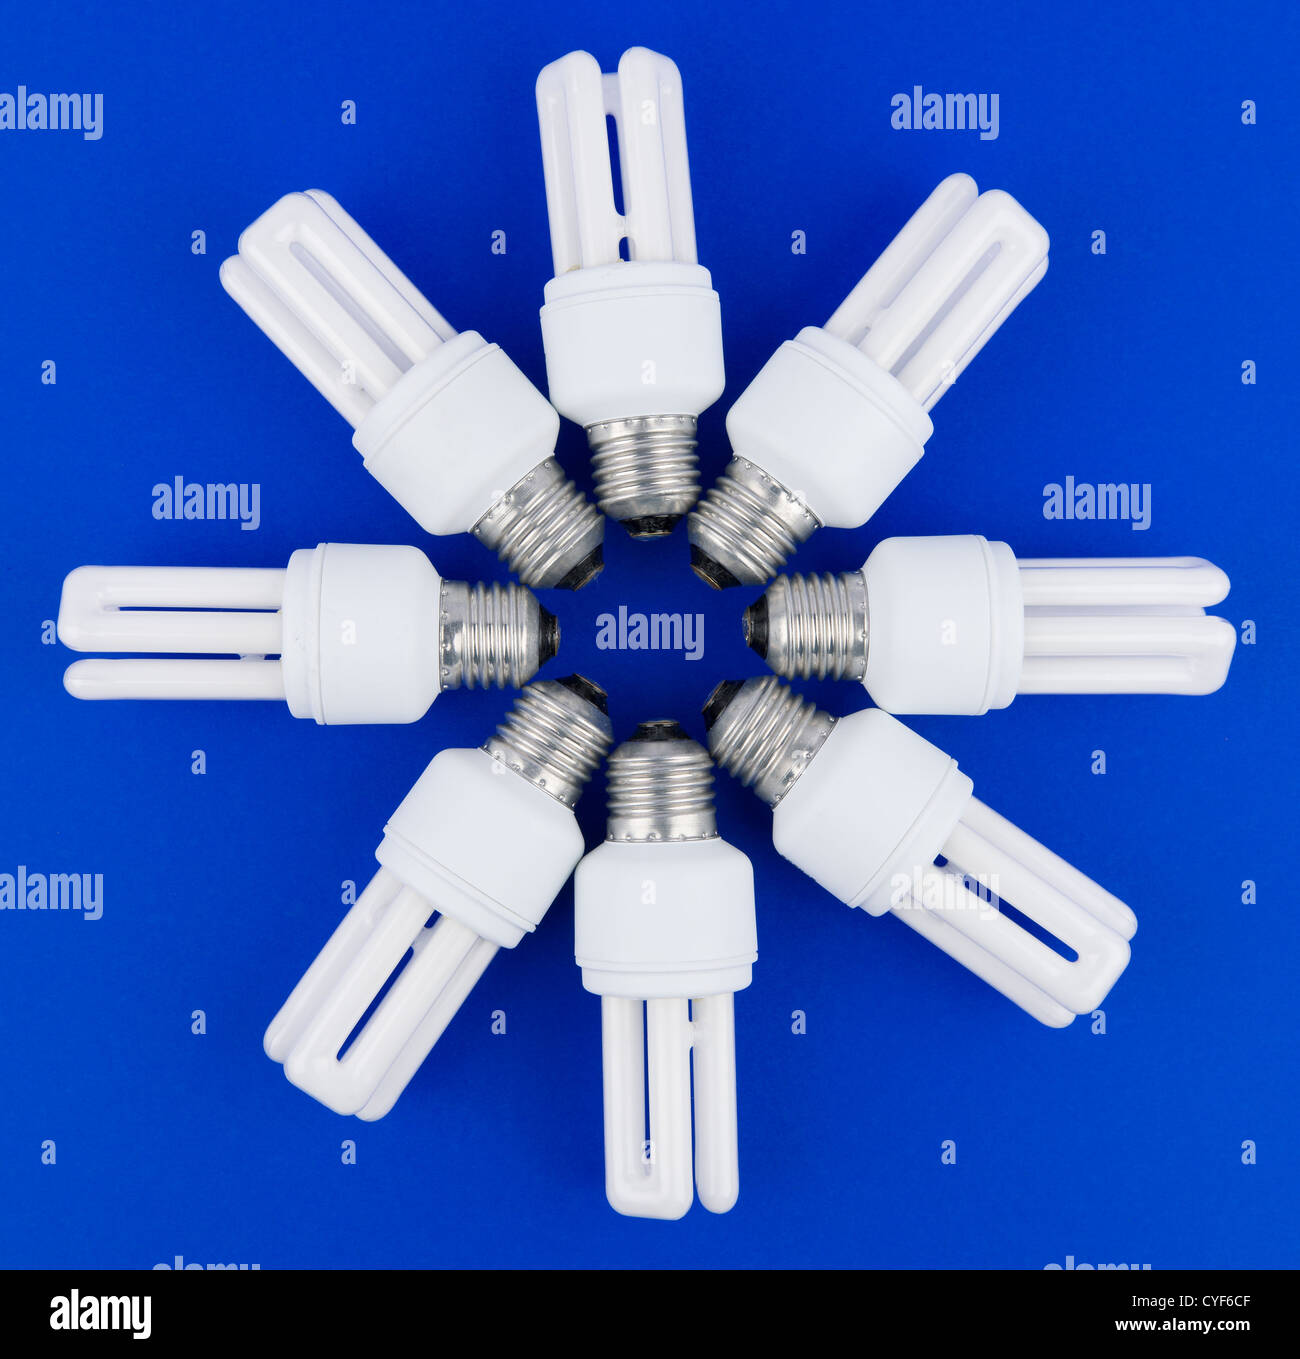 Acht Lampen in den Stern-Muster und blauem Hintergrund. Stockfoto